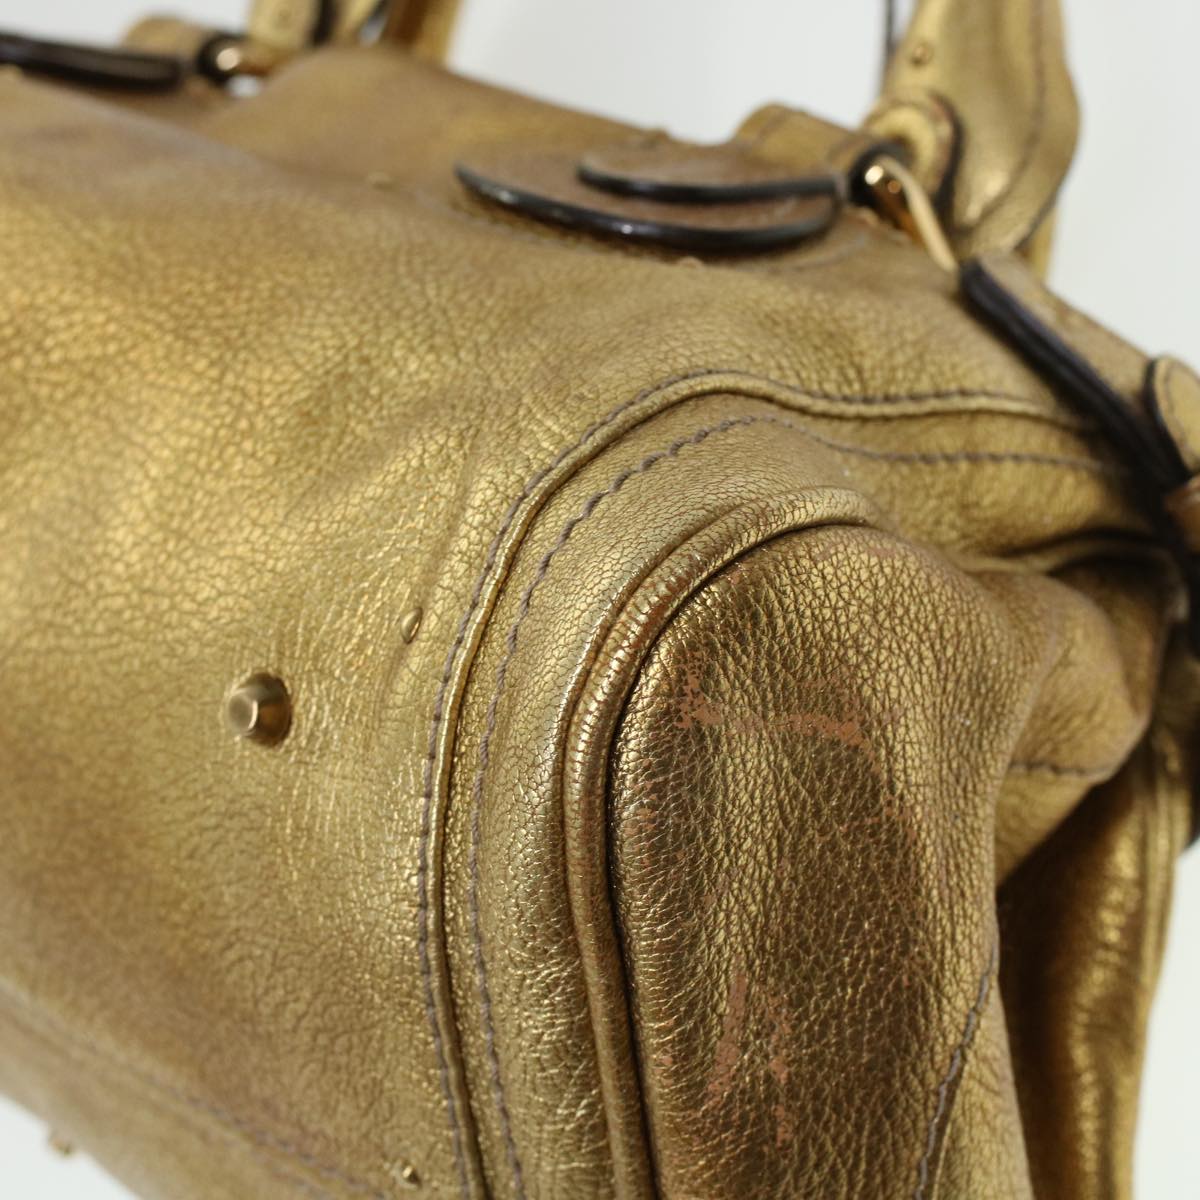 Chloe Paddington Hand Bag Leather Gold 03-09-51-5811 Auth bs5464